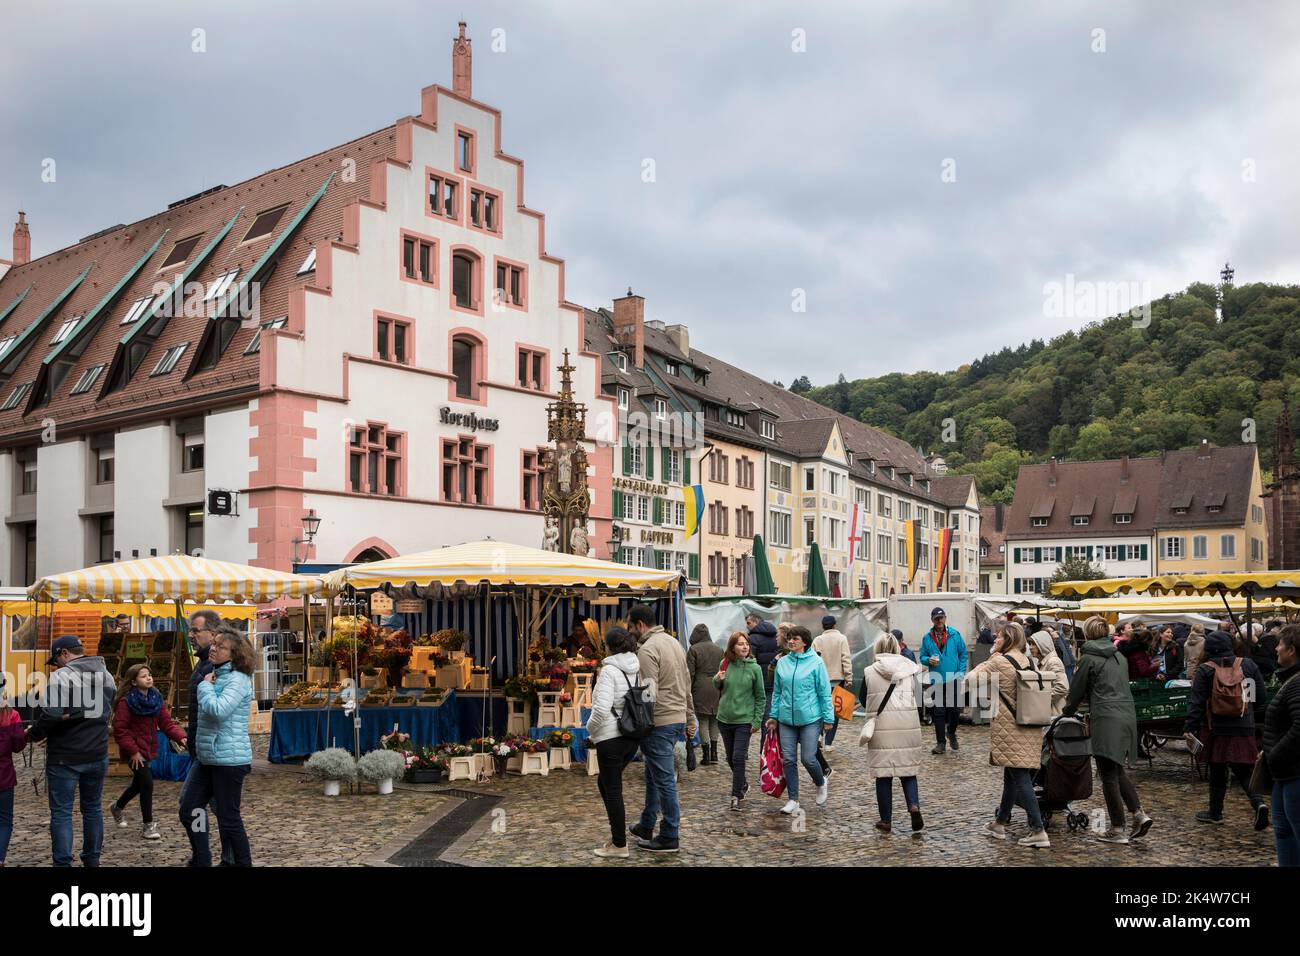 Markt im nördlichen Teil des Domplatzes, Kornhaus, Freiburg im Breisgau, Baden-Württemberg, Deutschland. Markt auf dem noerdlichen Mi Stockfoto